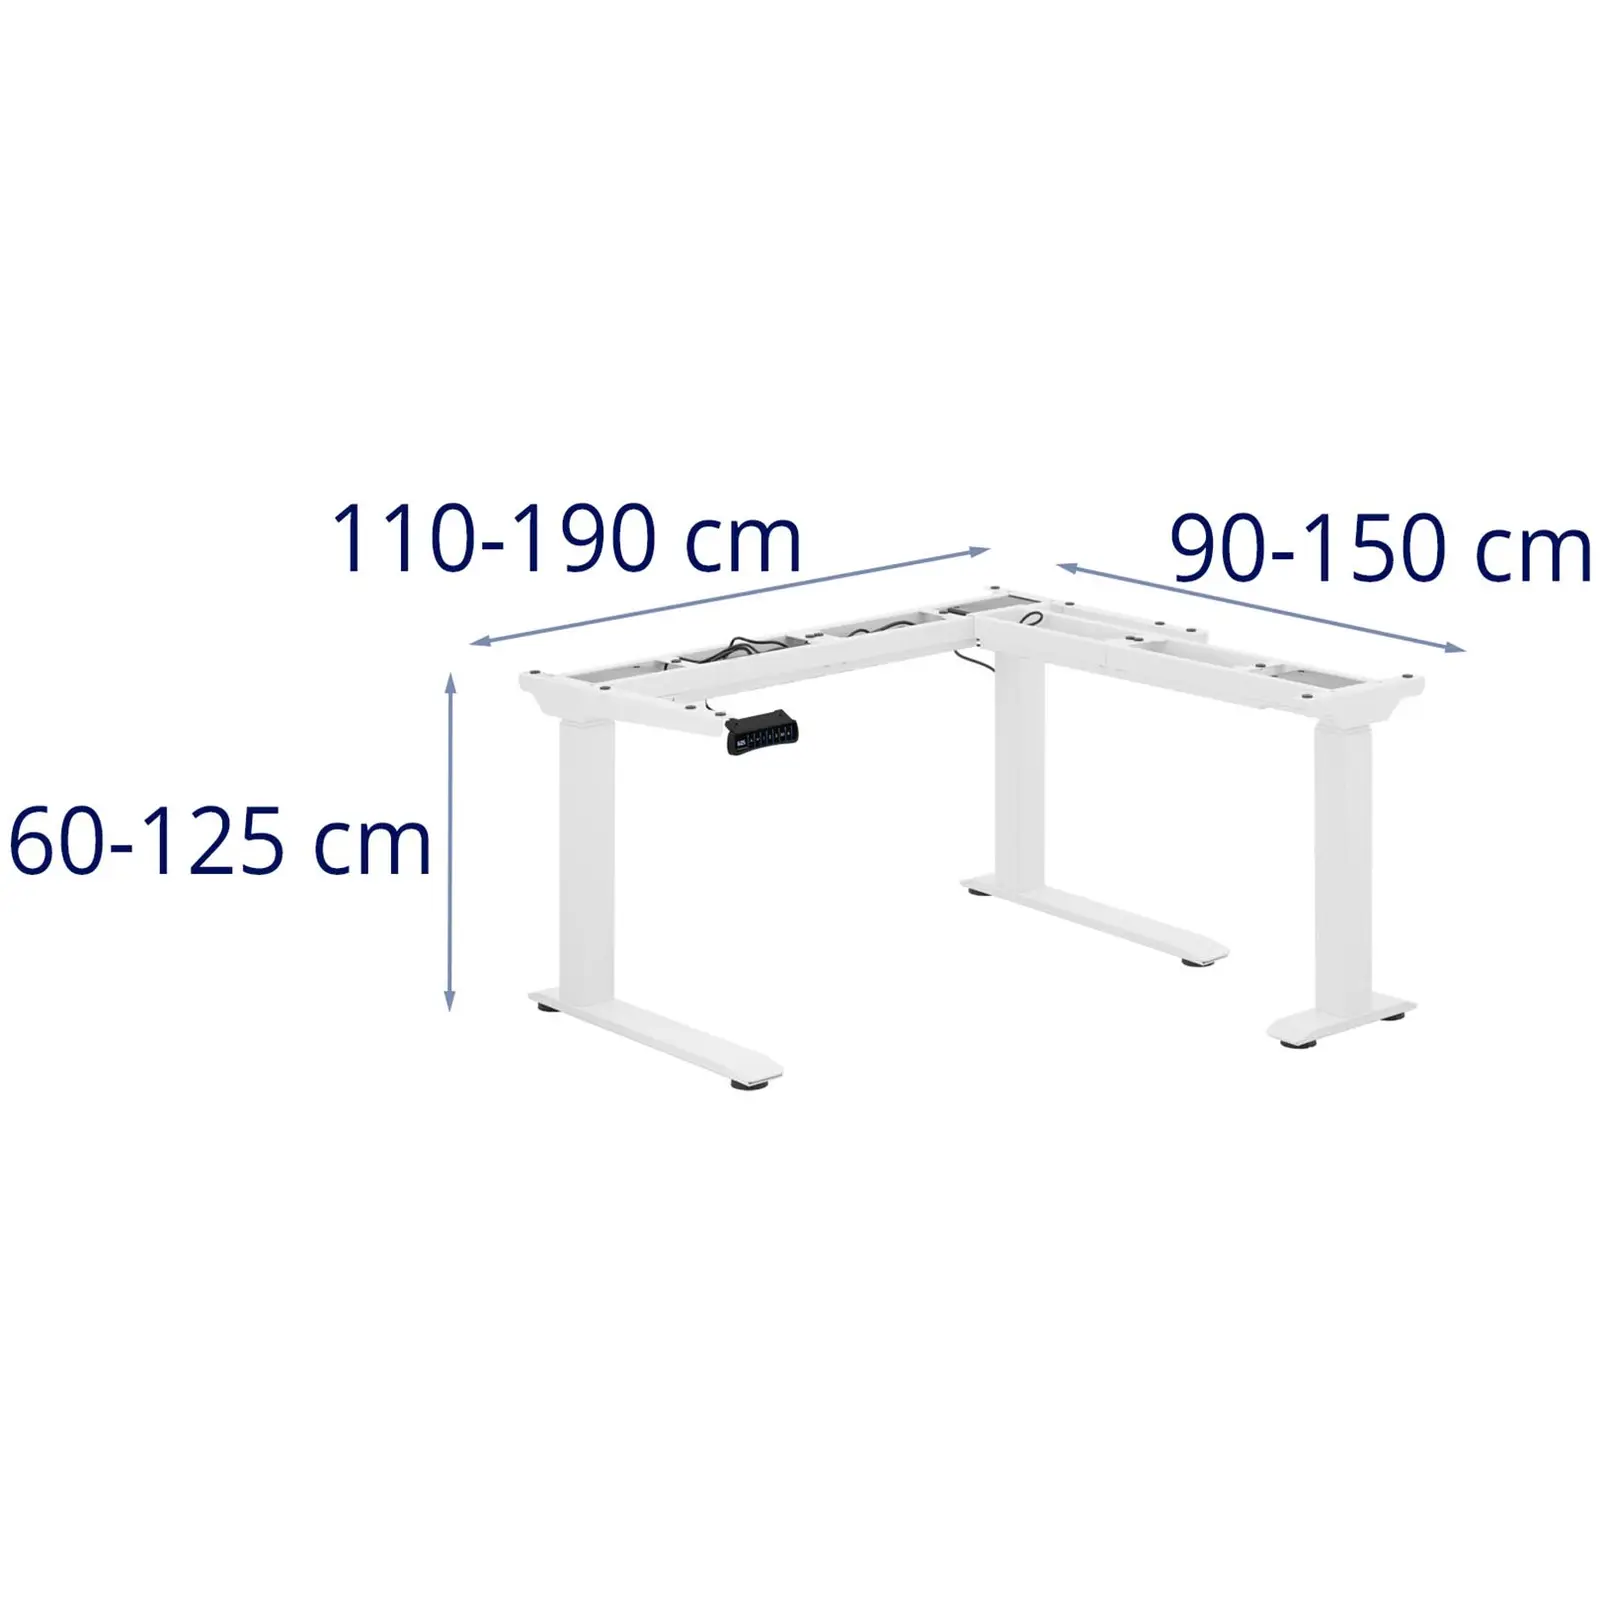 Outlet Stelaż pod biurko - wysokość: 60-125 cm - szerokość: 110-190 cm (po lewej) / 90-150 cm (po prawej)